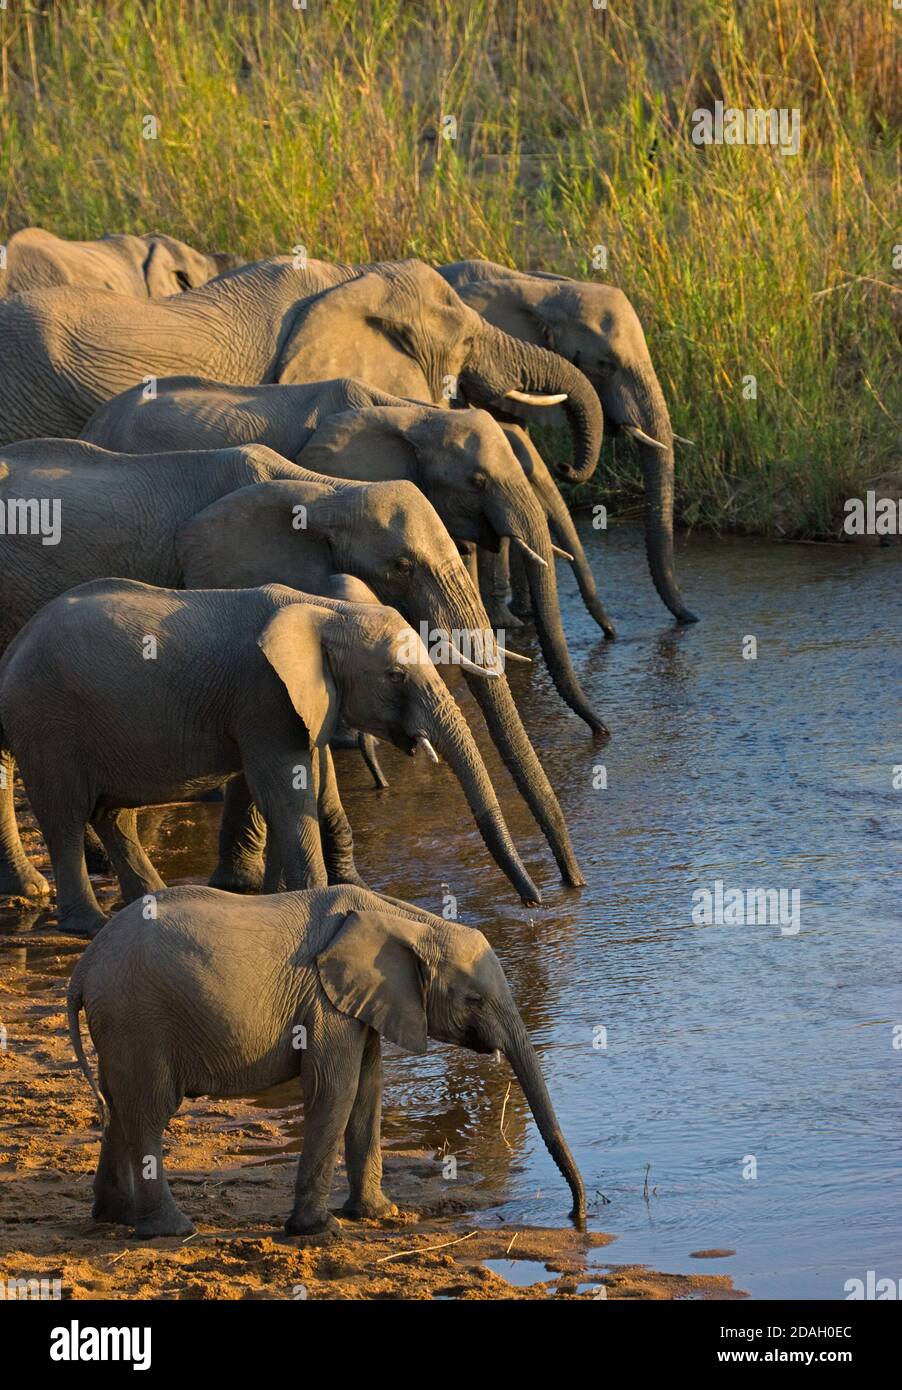 Allevamento di elefanti presso il fiume, Kruger National Park, Sud Africa Foto Stock